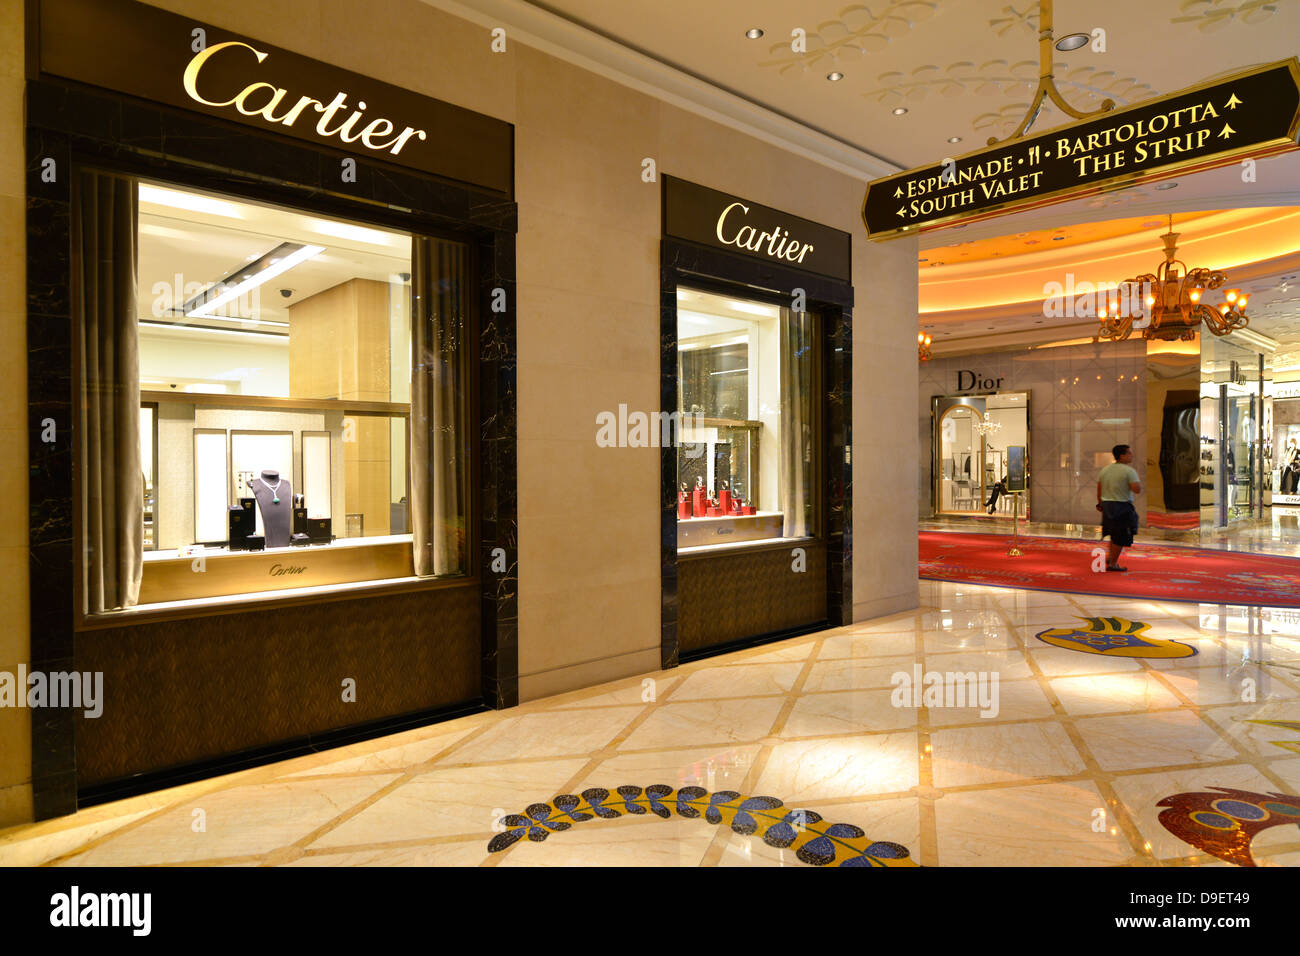 Boutique Cartier, Dior, cinque stelle hotel casino Wynn Las Vegas, Nevada, gli Stati Uniti d'America, USA Foto Stock